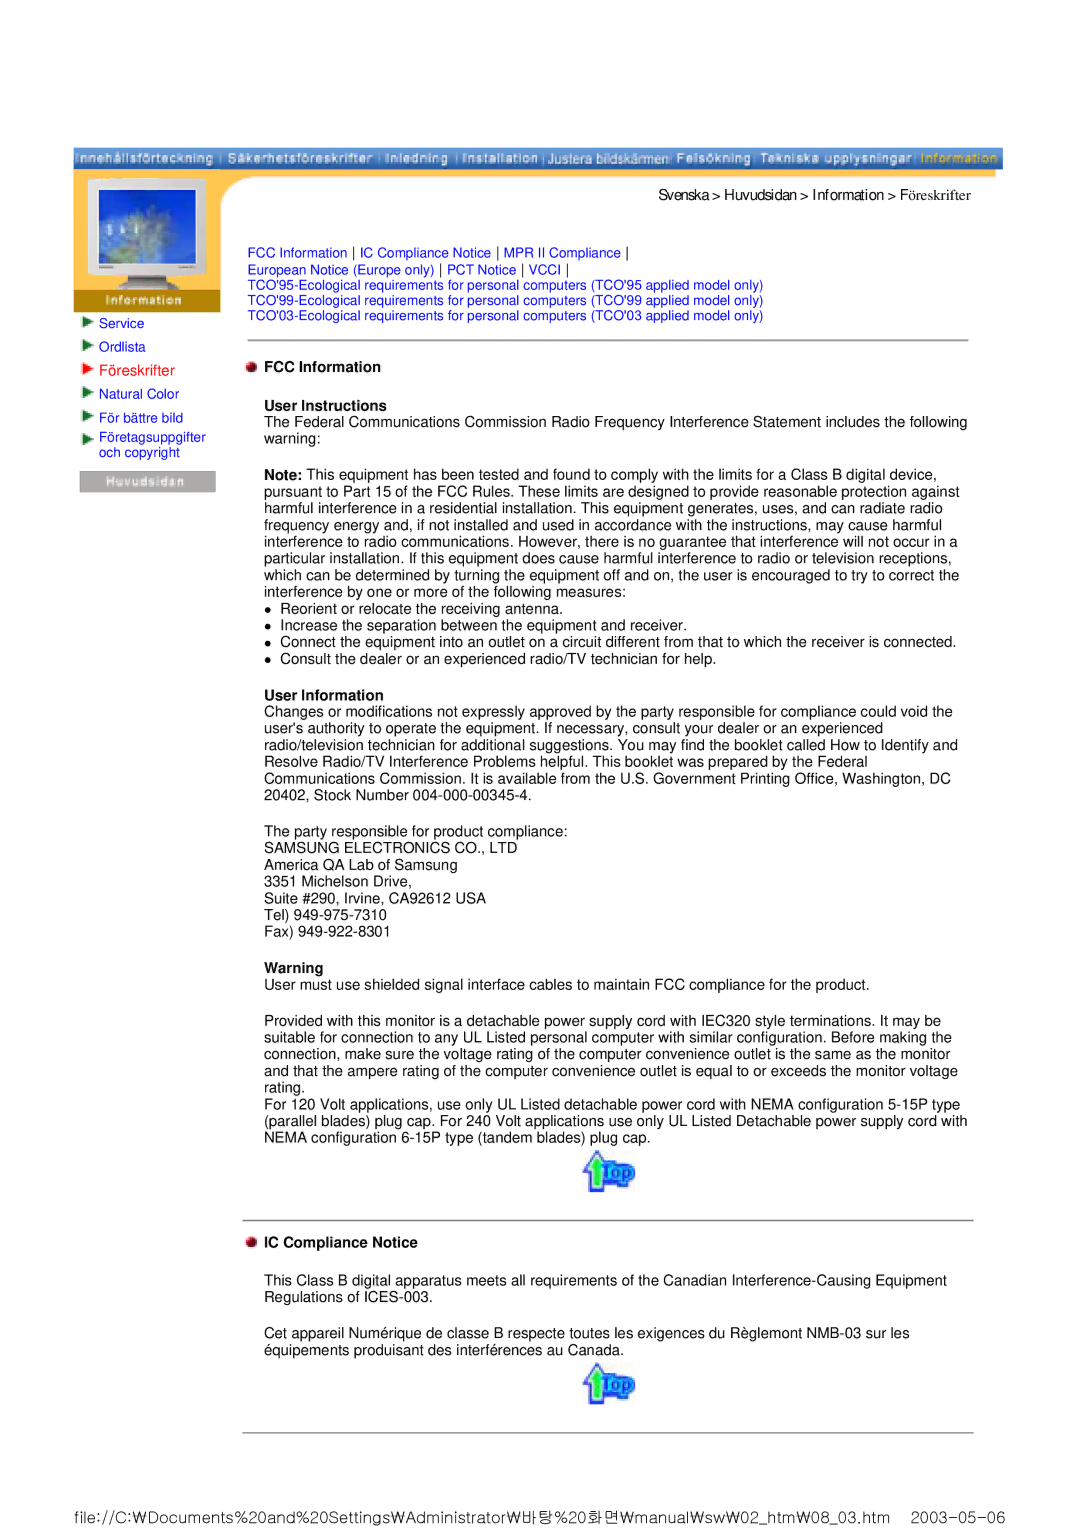 Samsung RT15ASSST/EDC manual Föreskrifter, FCC Information User Instructions, User Information, IC Compliance Notice 